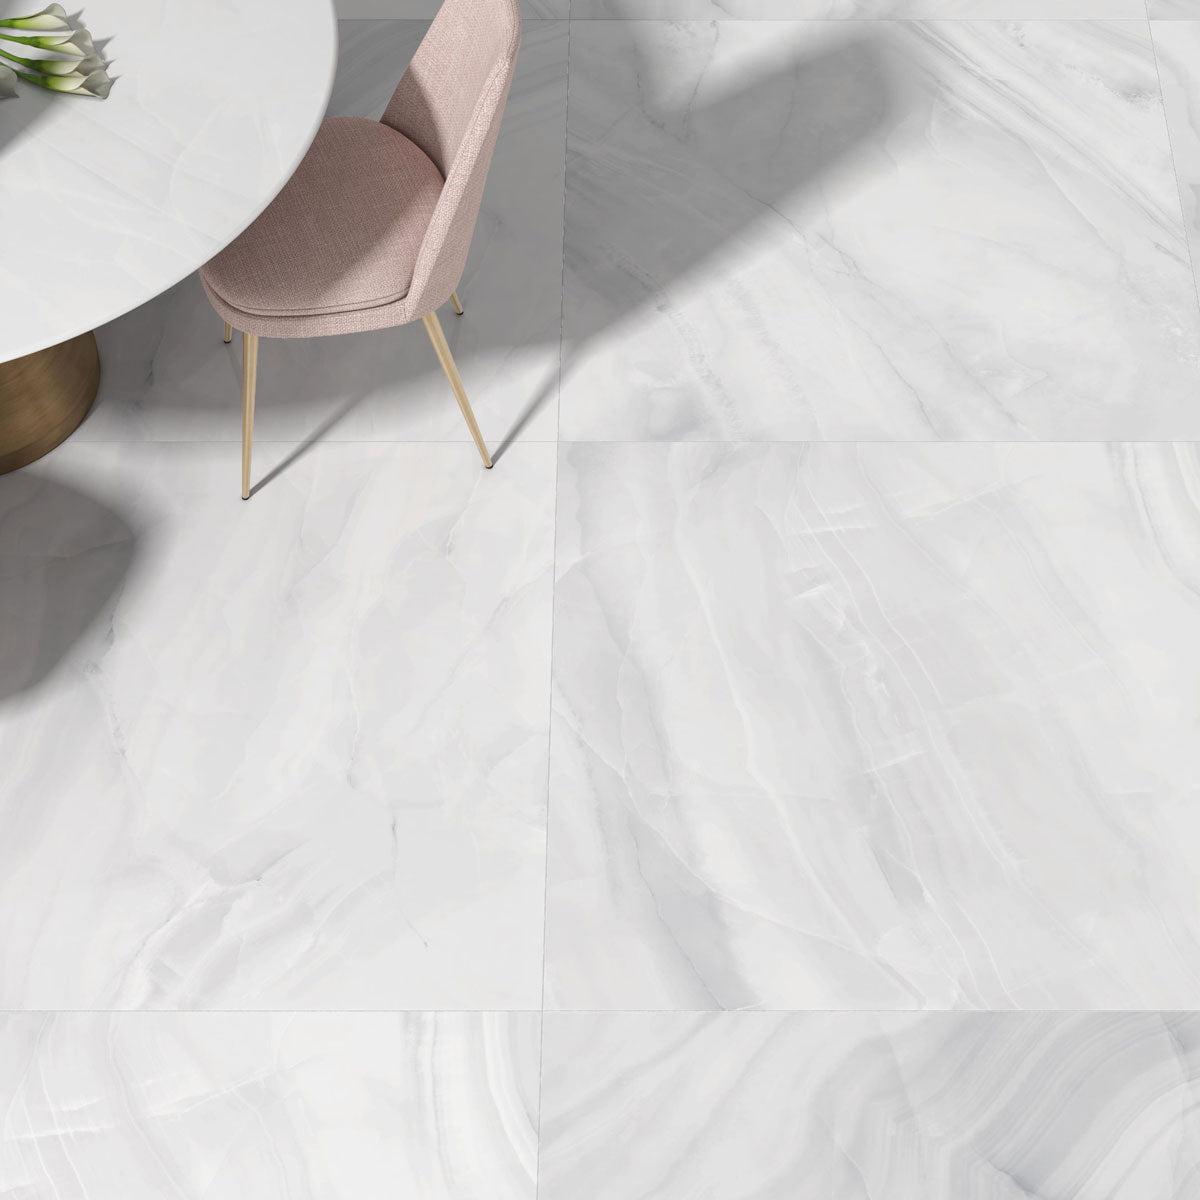 Athena Blanc Polished White Stone Slab Tile Floor